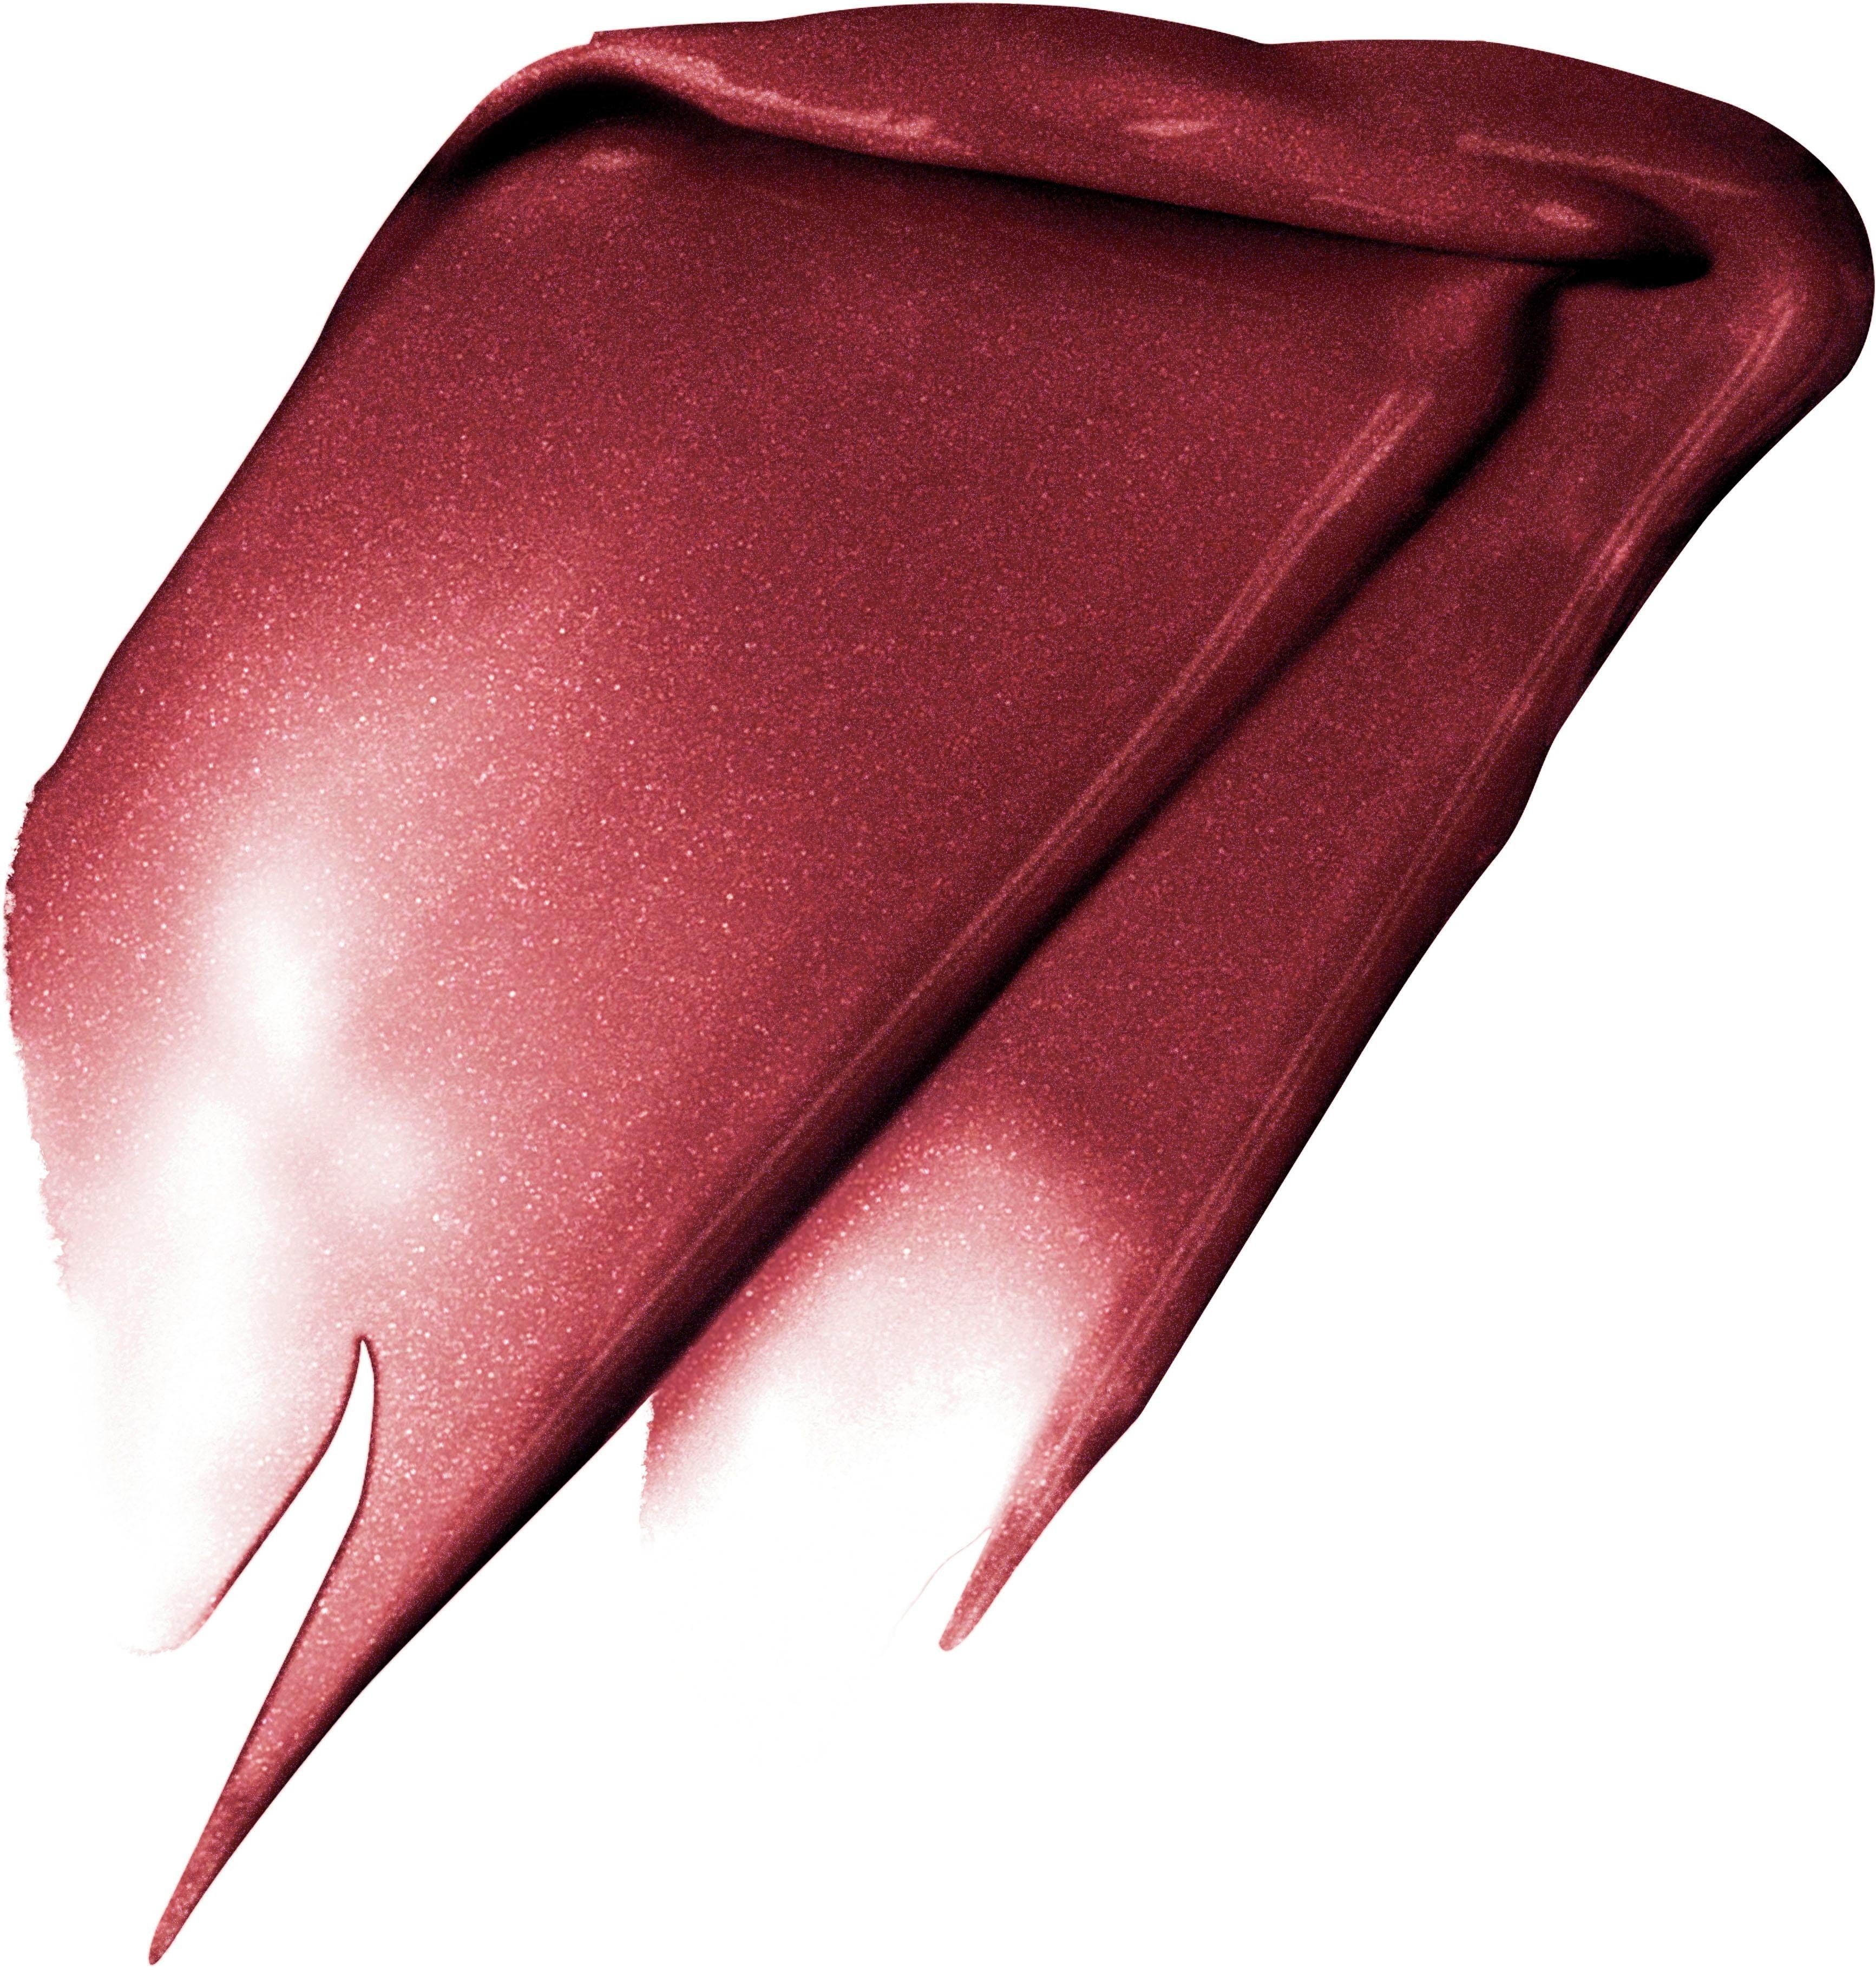 PARIS L'ORÉAL PROFESSIONNEL Fascinate Lippenstift 205 Signature Rouge L'ORÉAL PARIS I Metallic